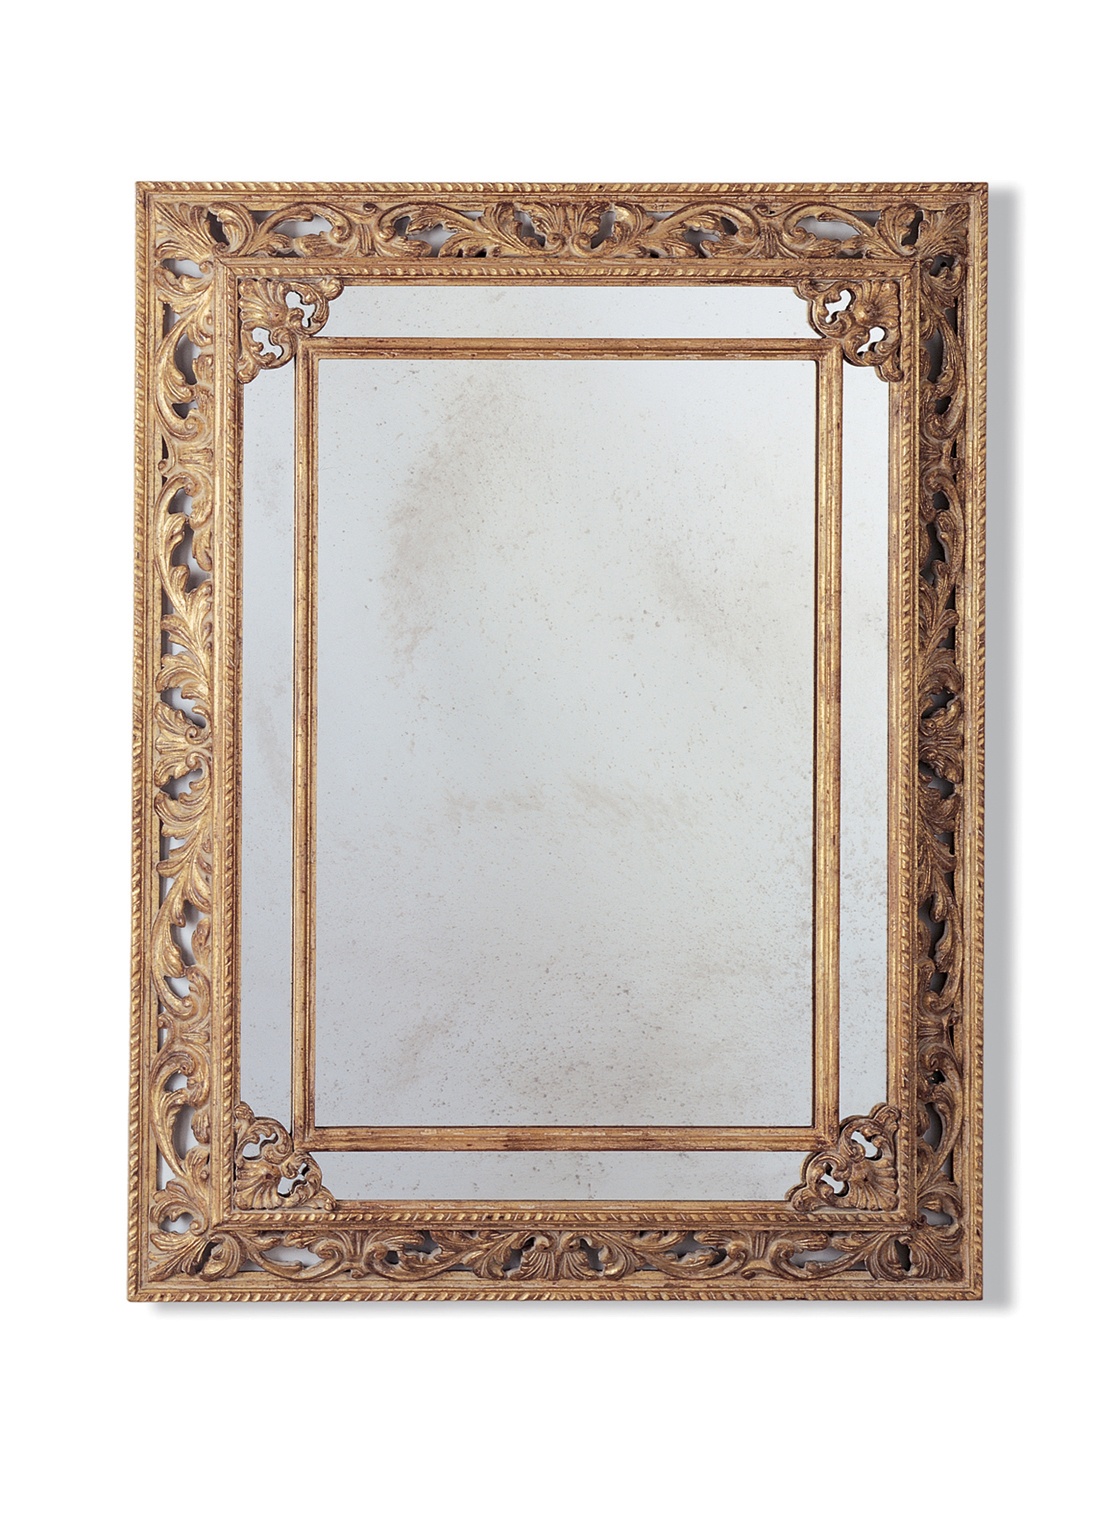 Buckingham mirror in Distressed silver - Beaumont & Fletcher